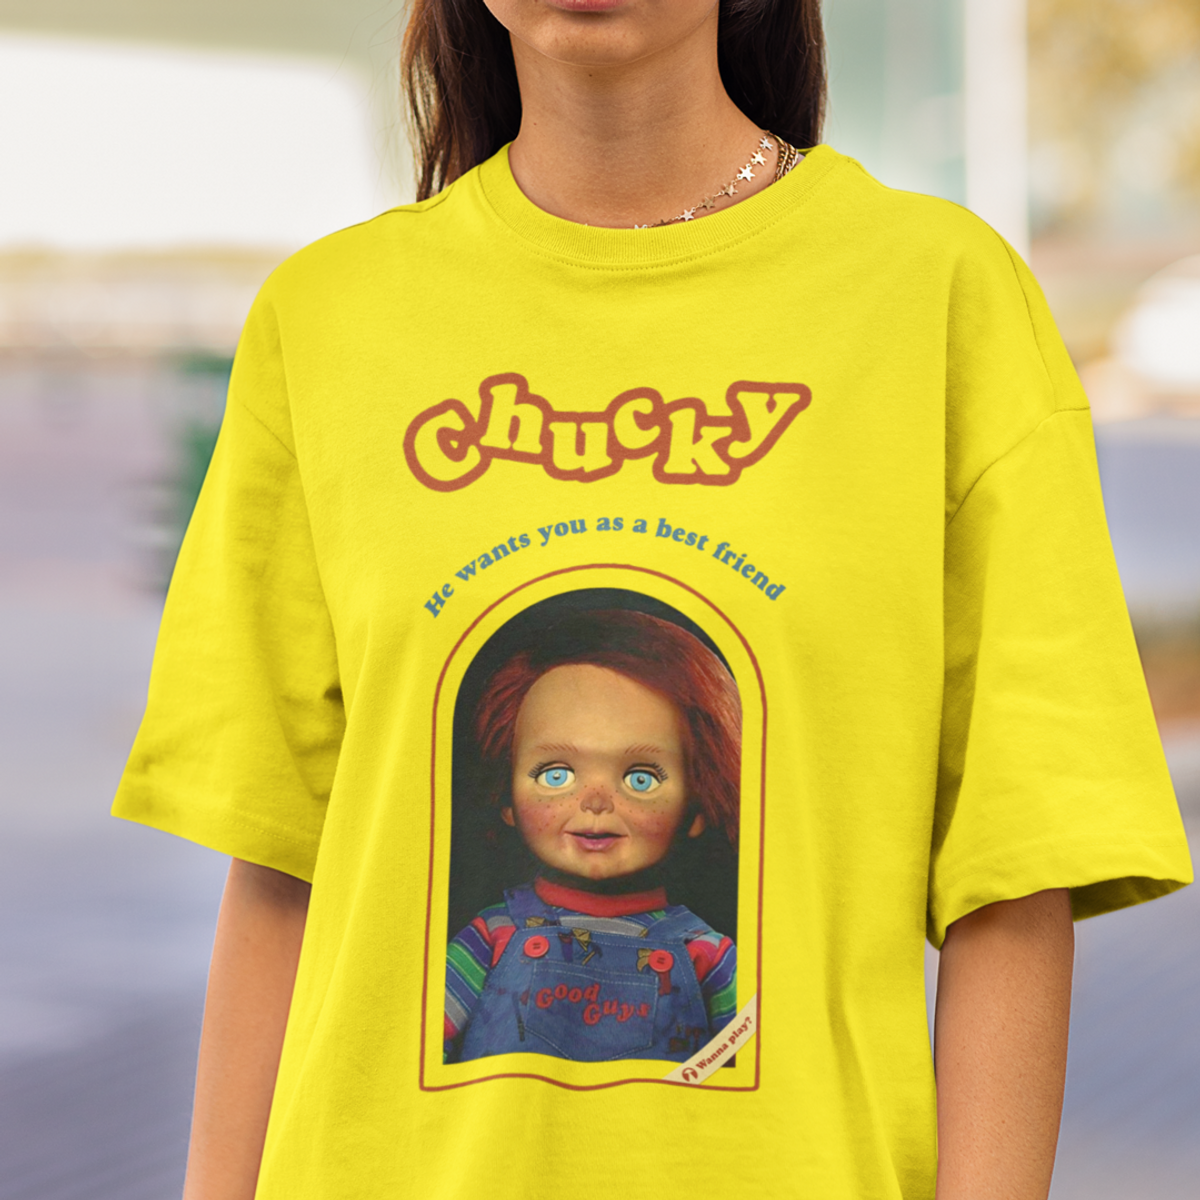 Nome do produto: Chucky